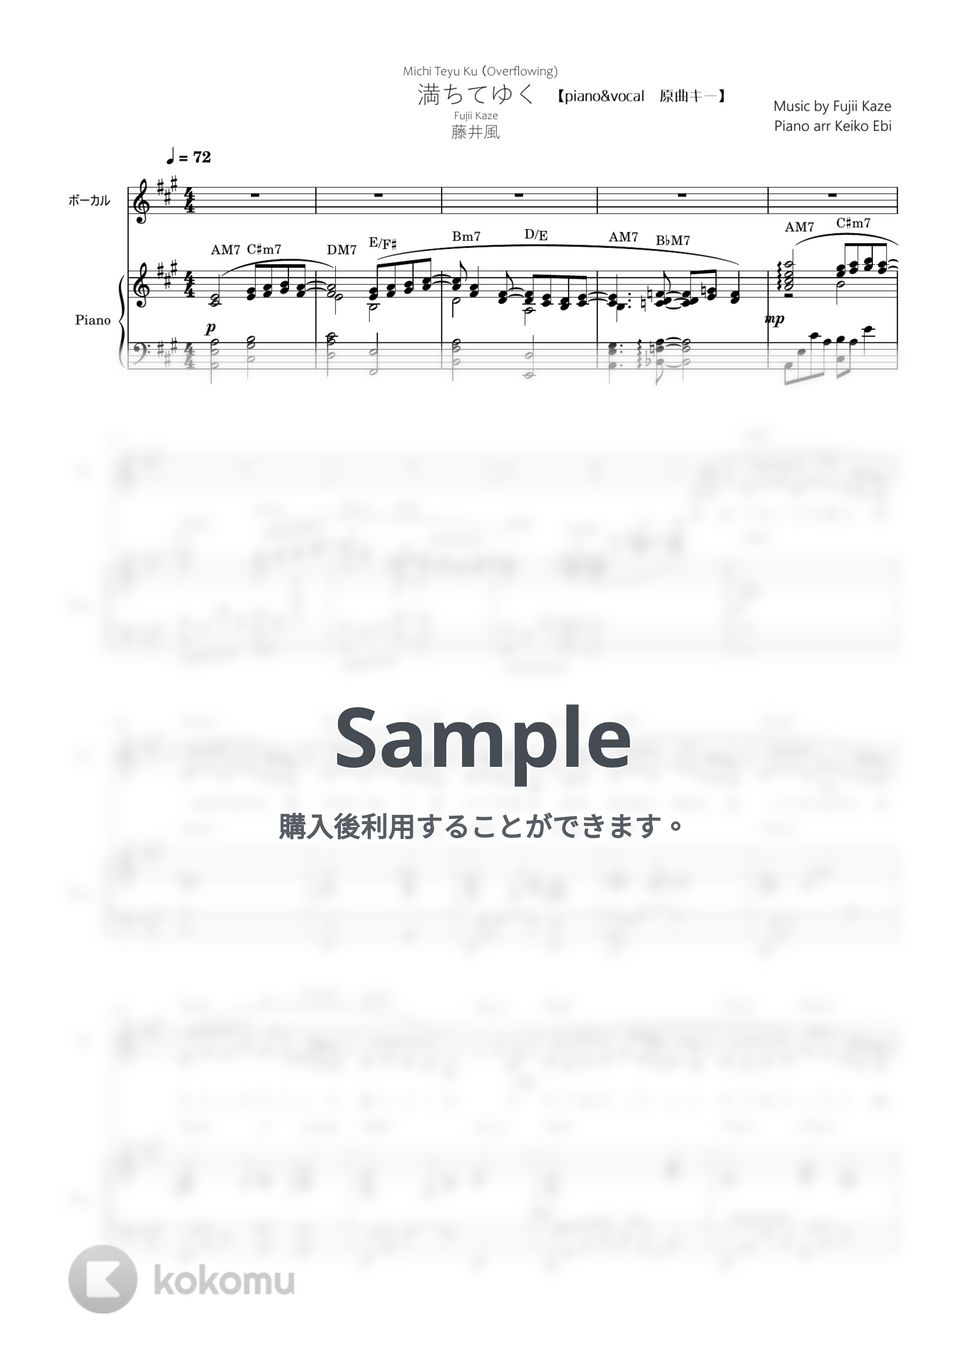 藤井風 - 満ちてゆく 弾き語り(piano&vocal楽譜) by KEIKO EBI